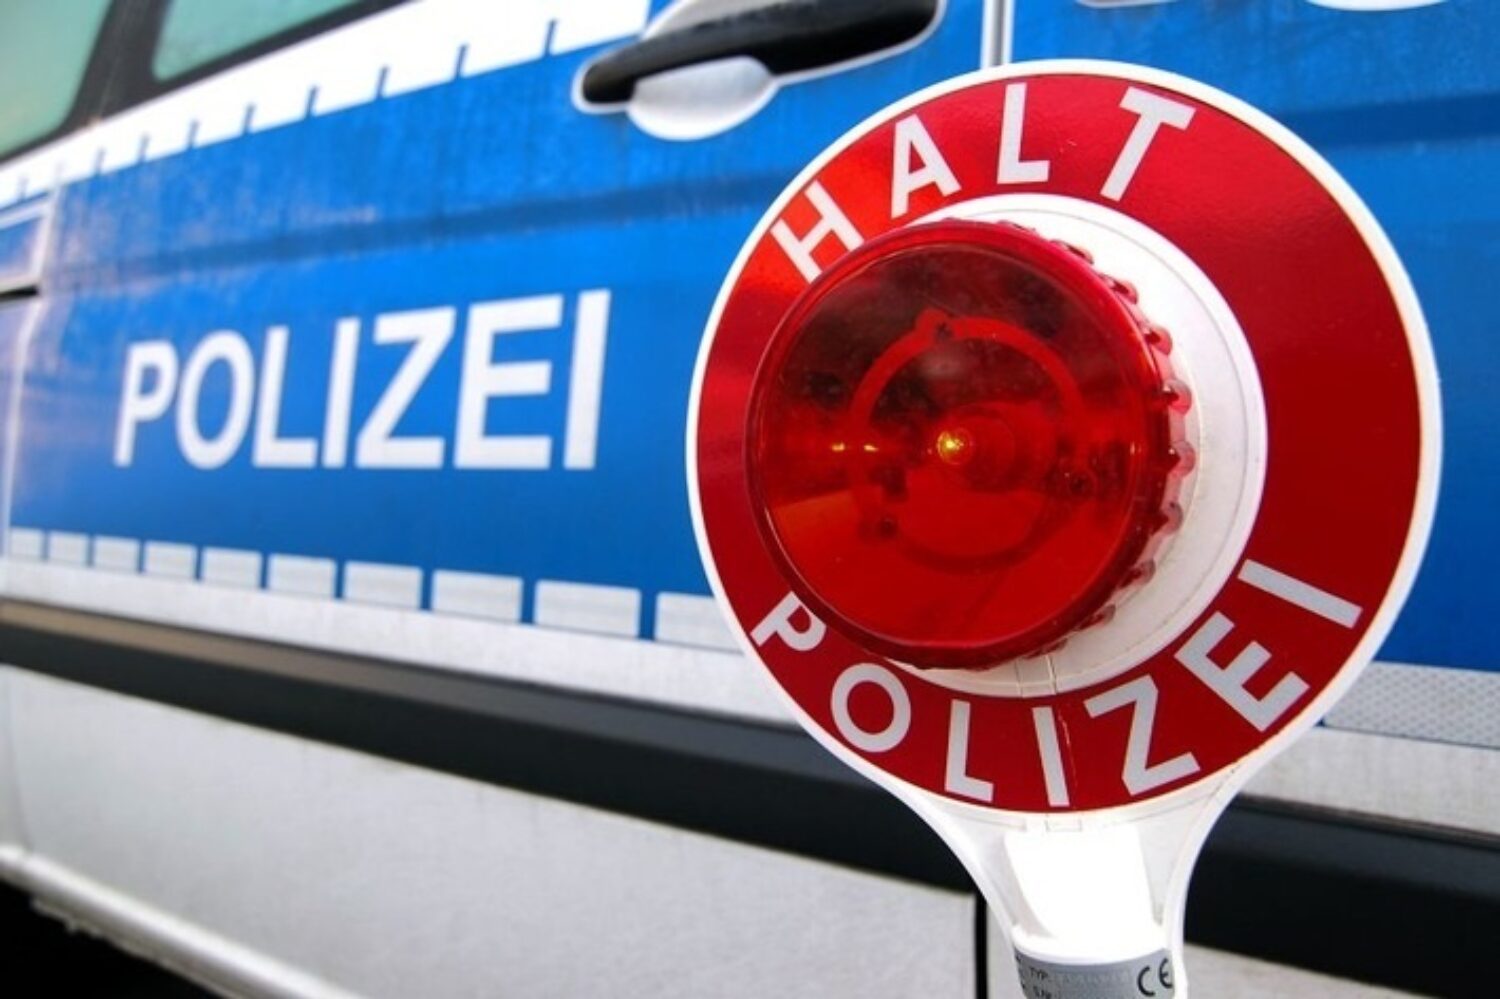 Wald-Michelbach – Polizei kontrolliert Fahrverbot auf ehemaliger Bergrennstrecke